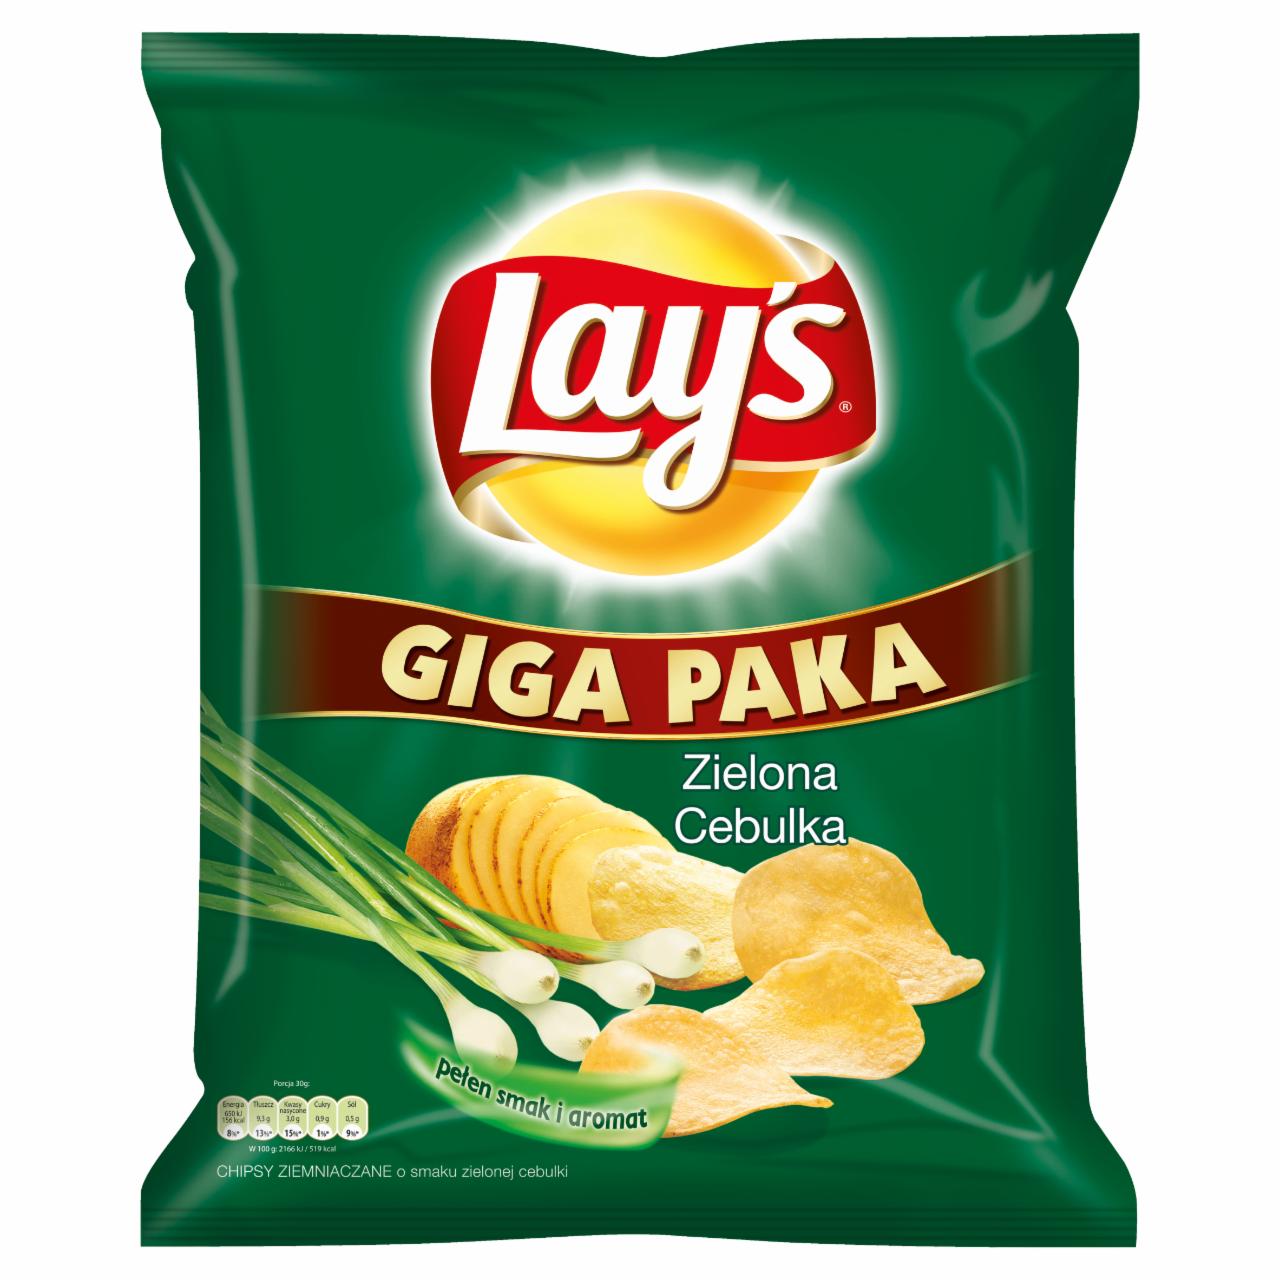 Zdjęcia - Lay's Zielona Cebulka Chipsy ziemniaczane 285 g